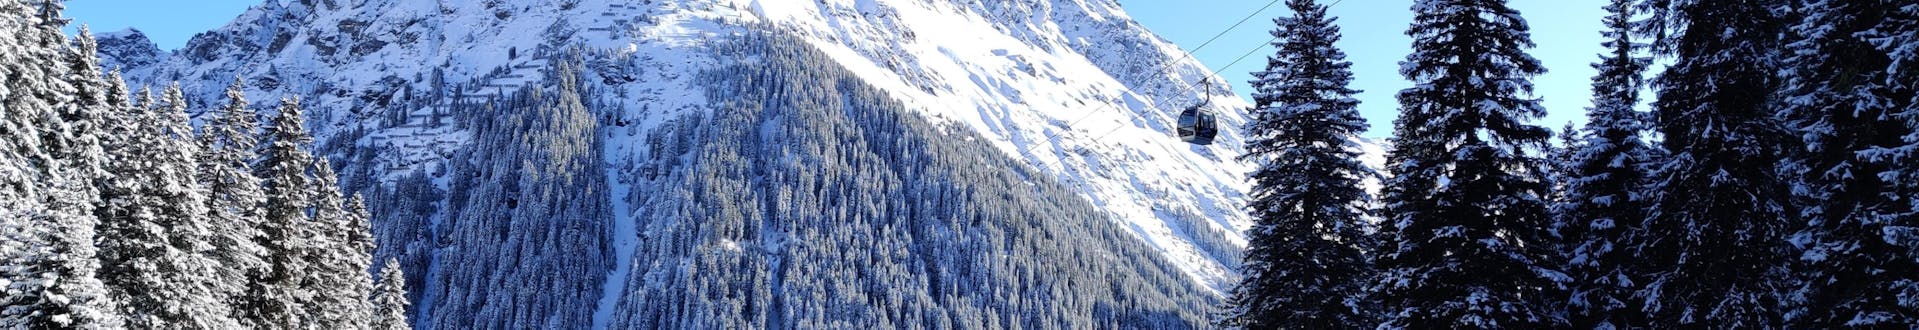 Imagen de un remonte que sube a las pistas de la estación de esquí de Gargellen, en Austria.